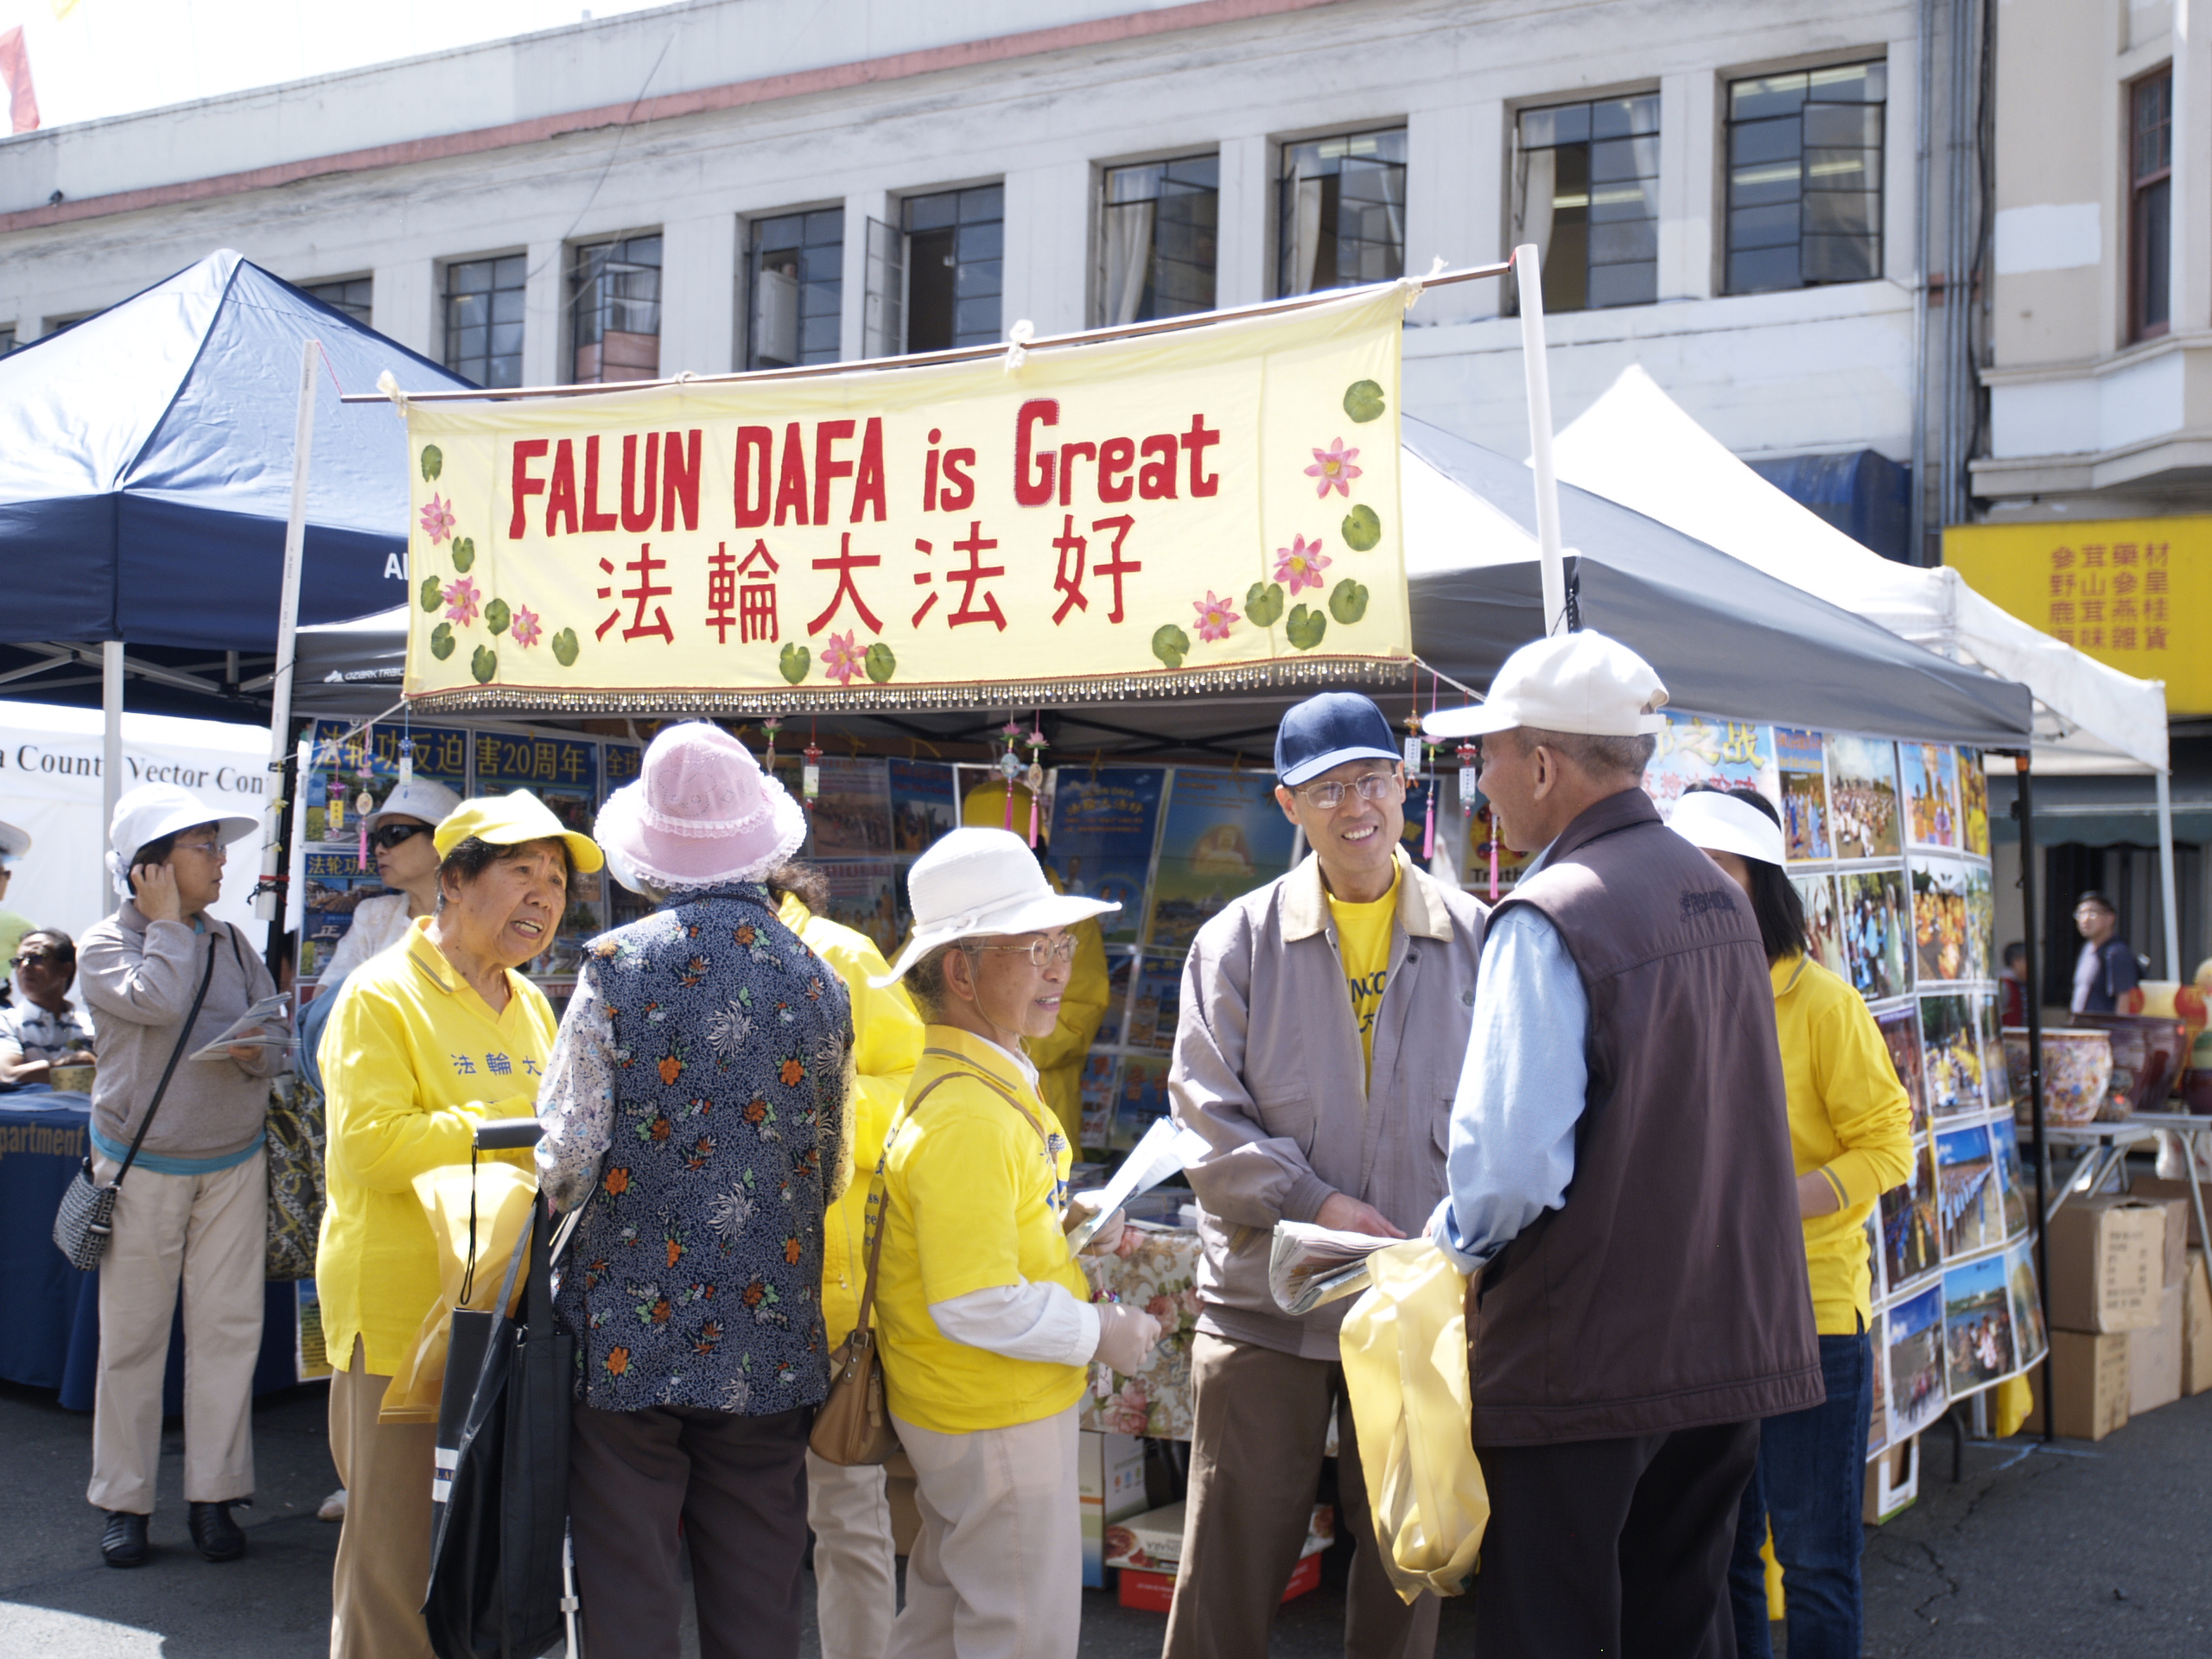 Image for article États-Unis, Suisse et Australie : Présentation du Falun Gong dans des événements communautaires locaux